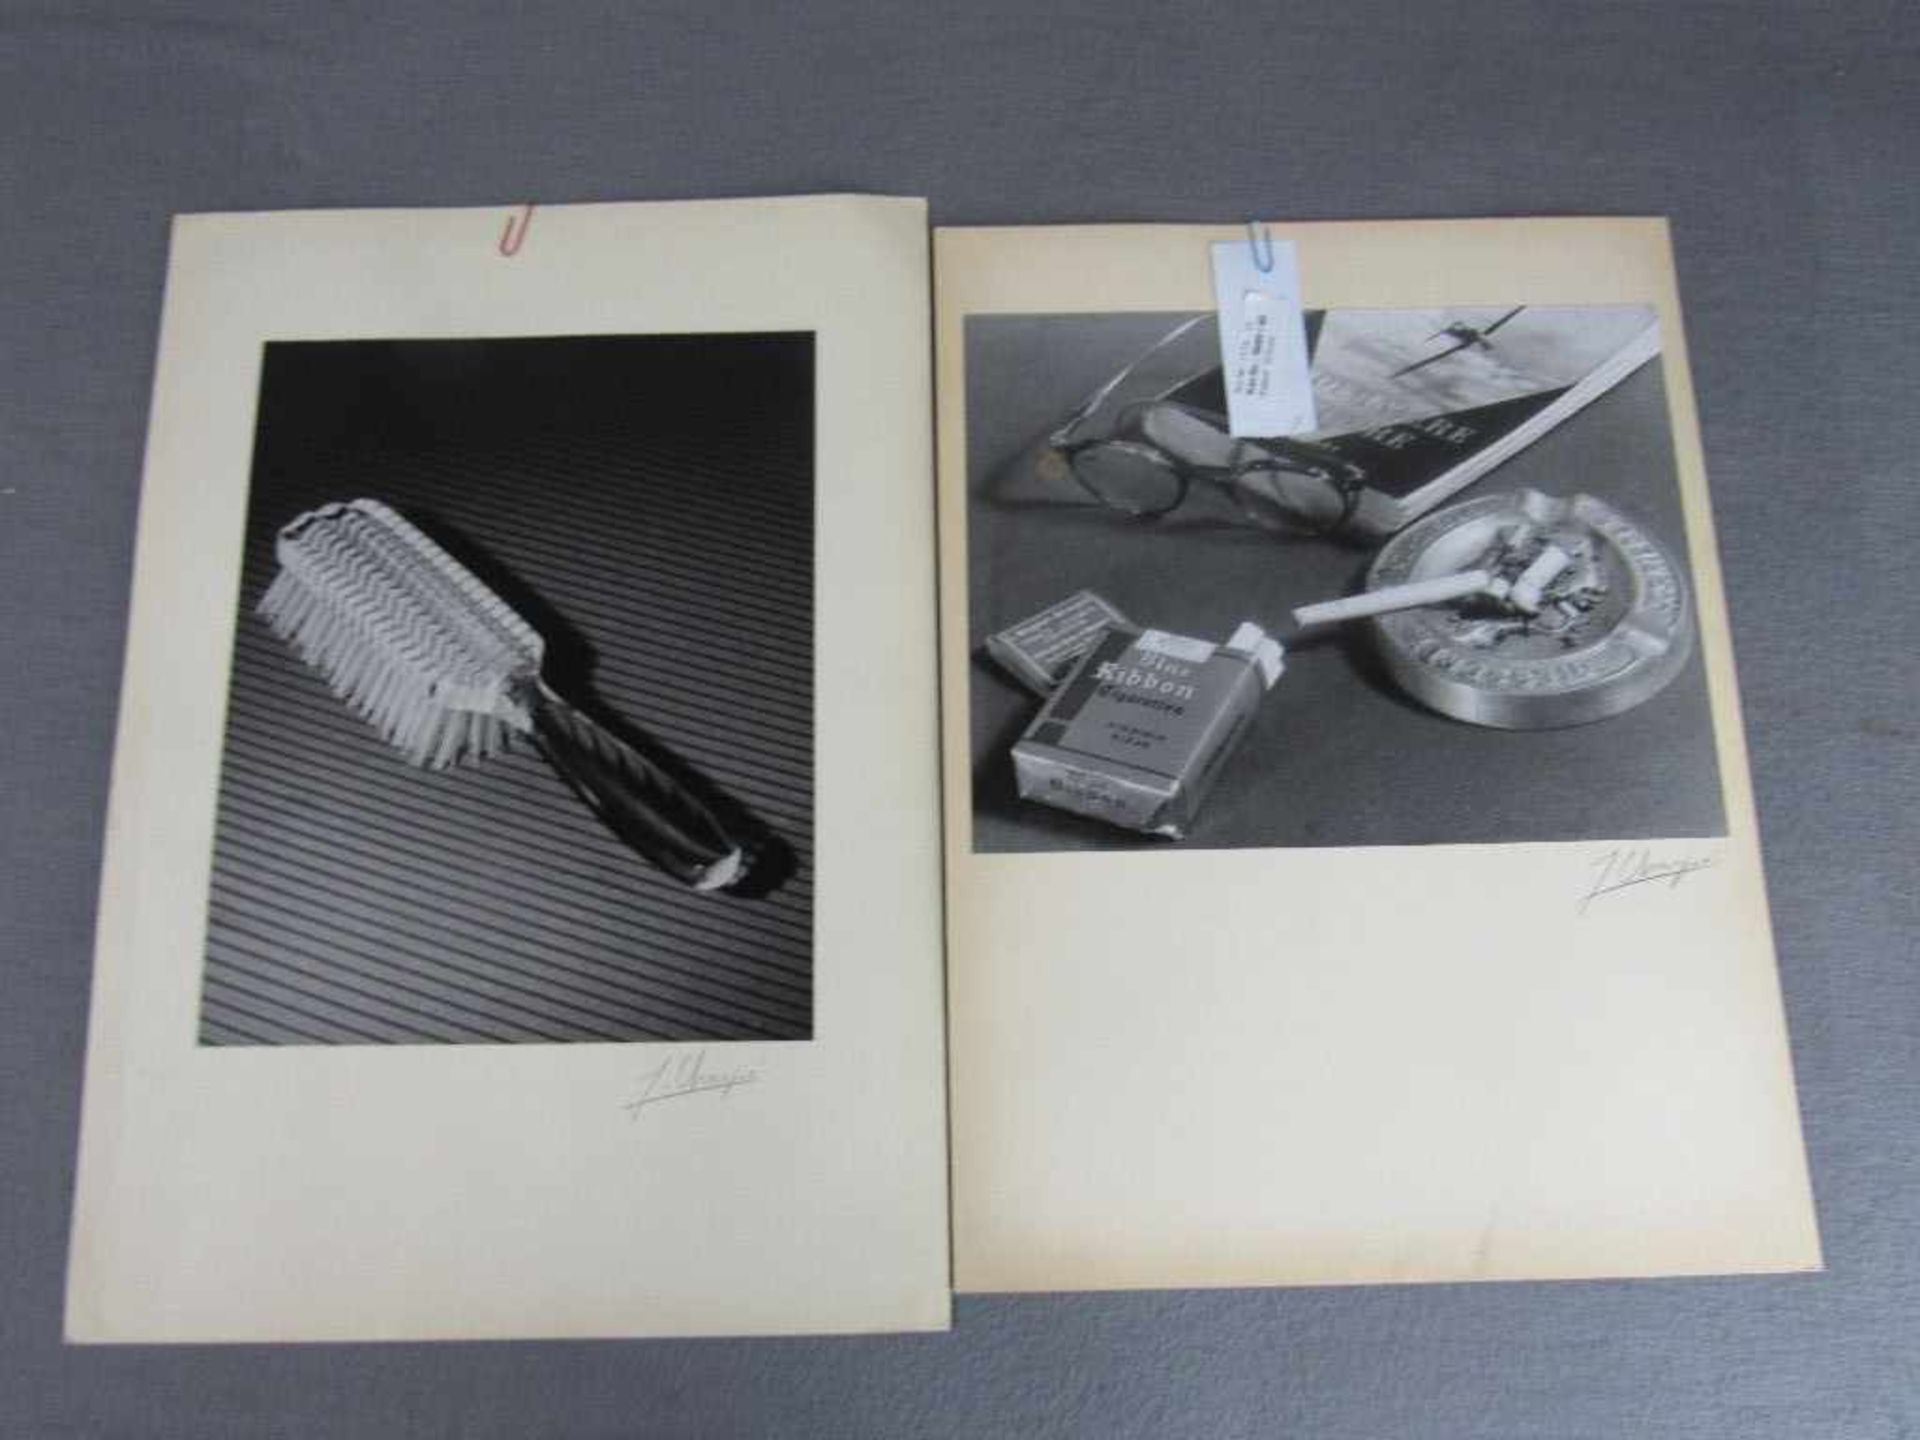 Zwei hochwertige Fotografien Chapiefoto mit original Signatur